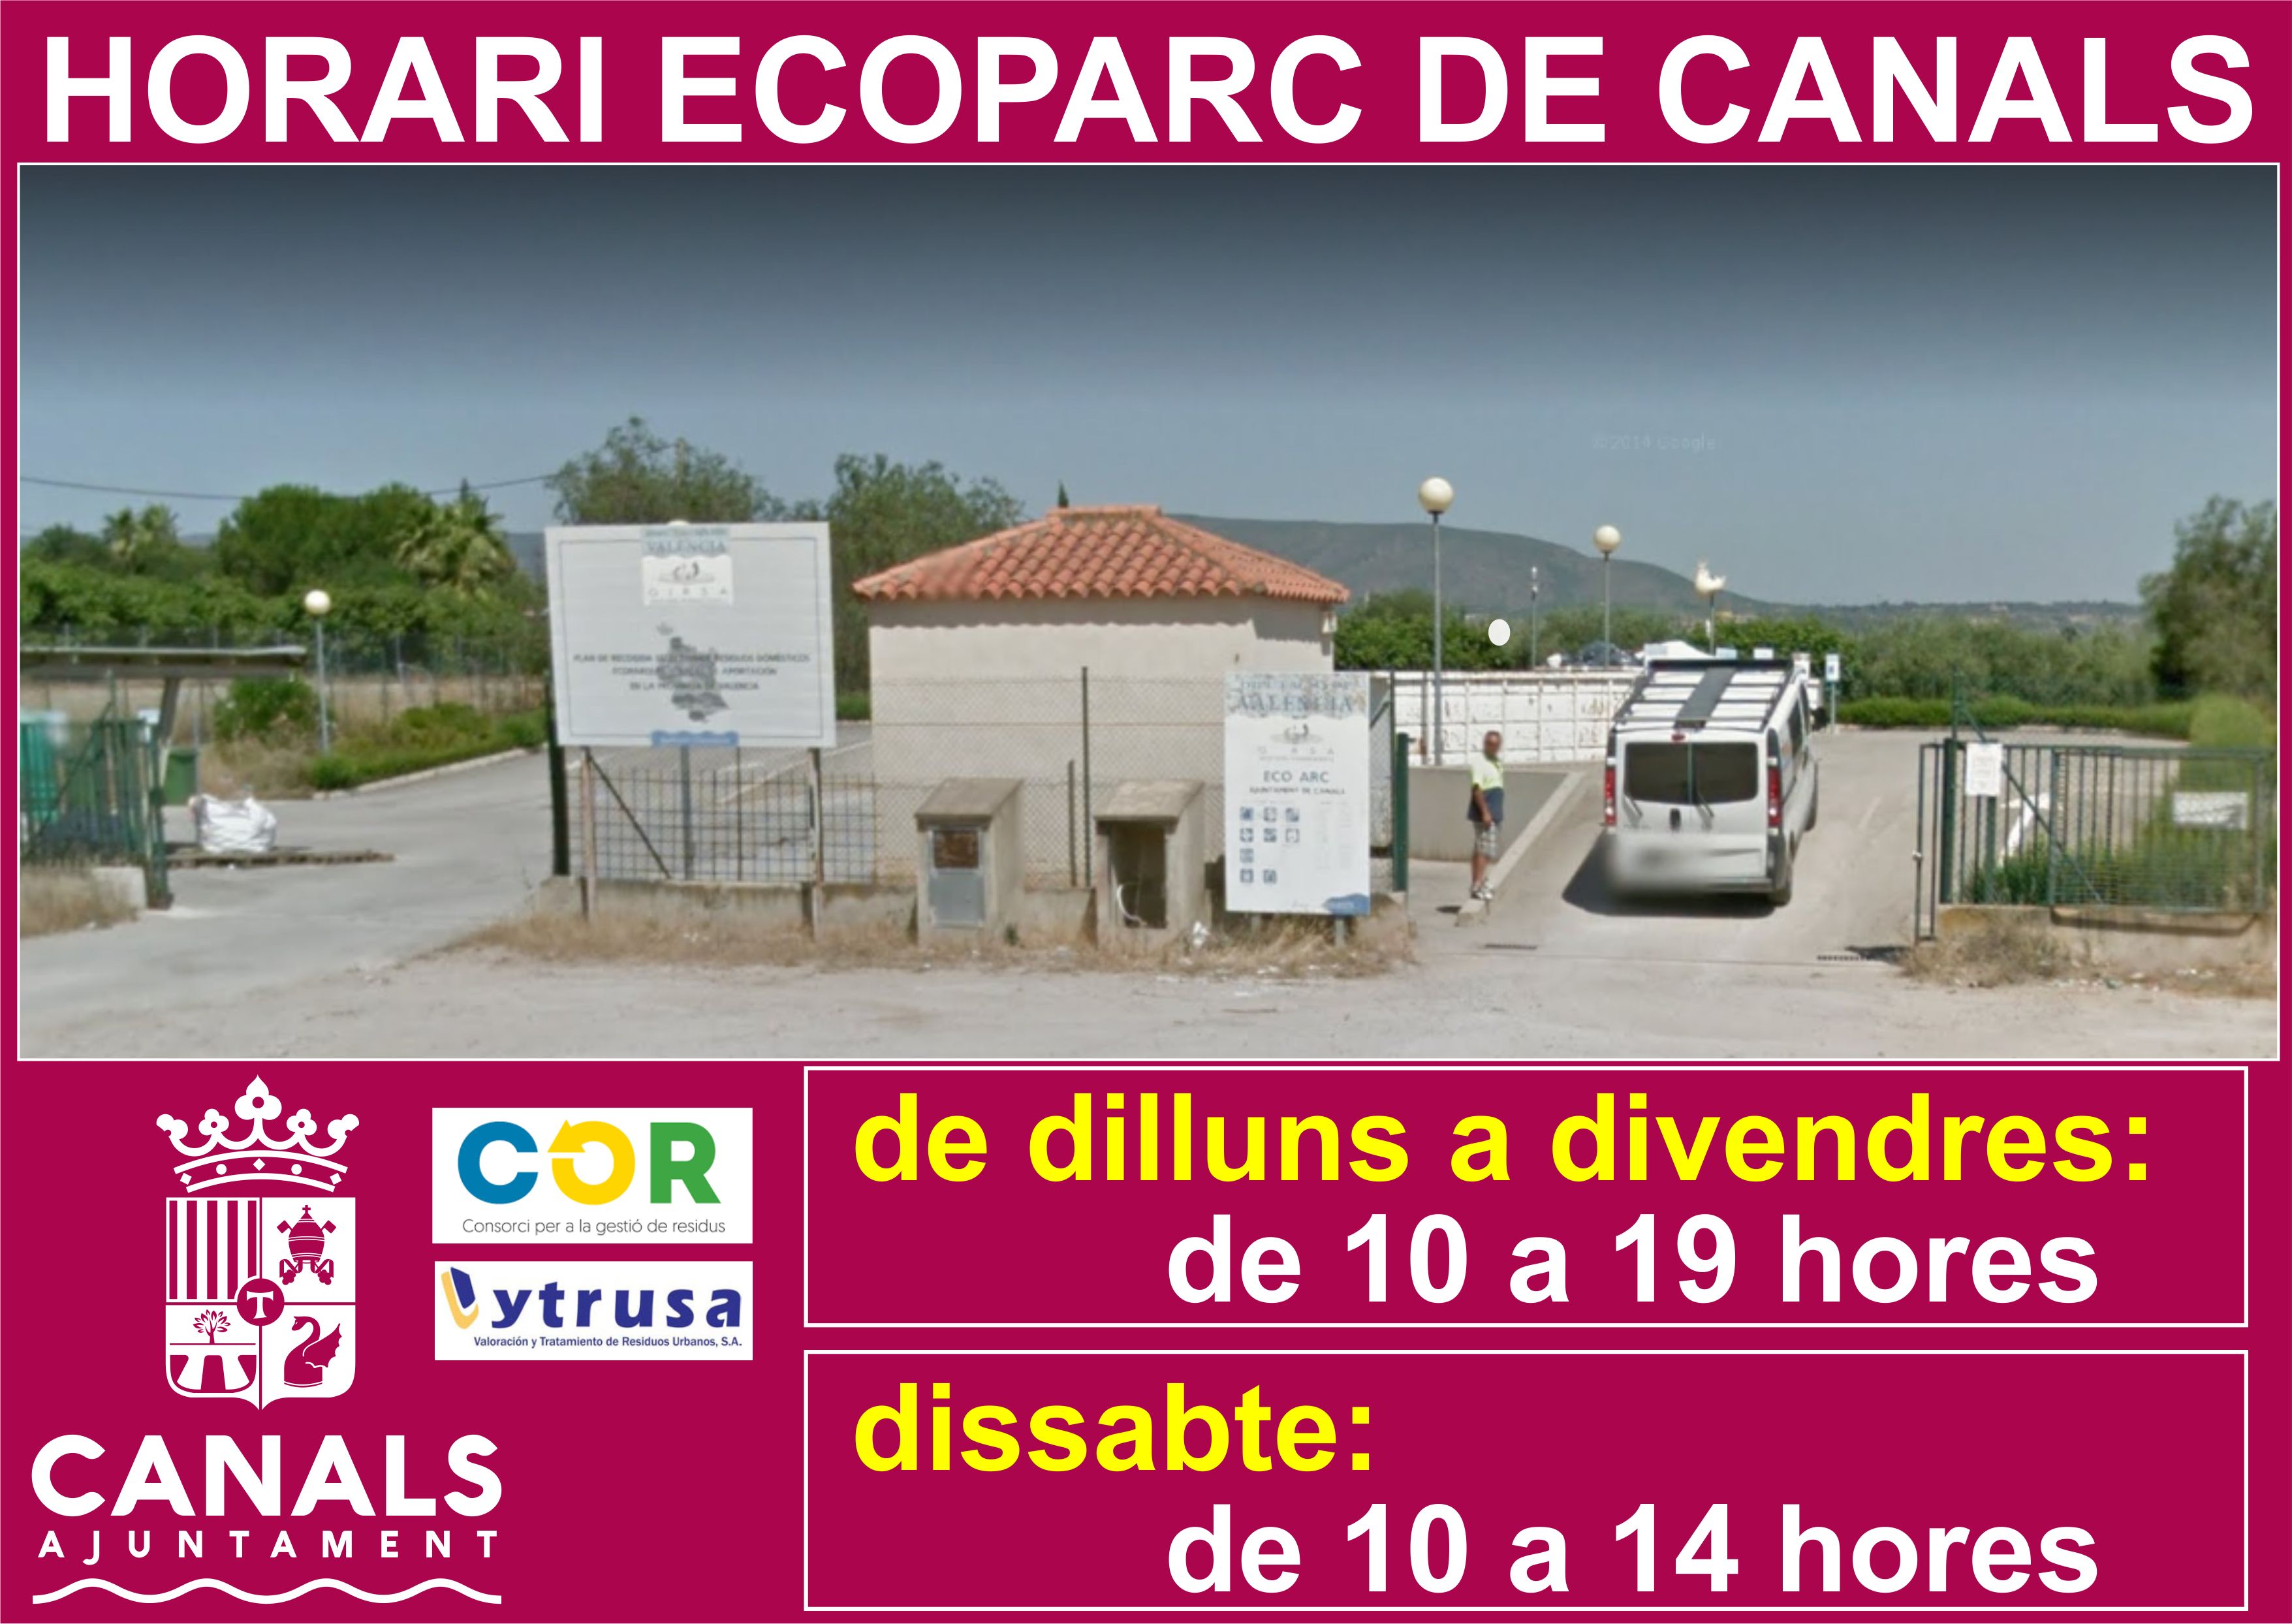 2017.05.16 horari ecoparc. Ajuntament de Canals